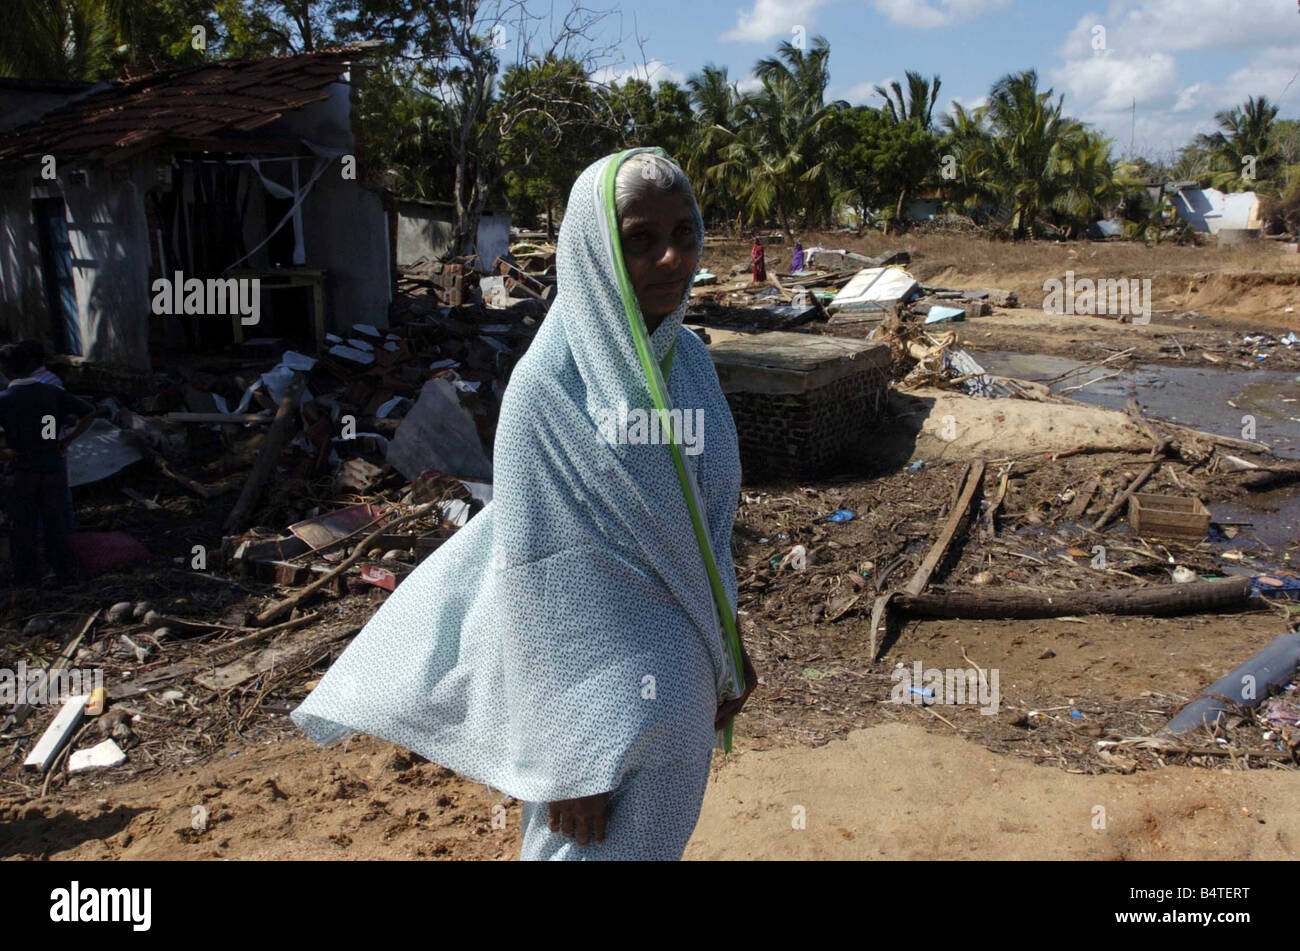 Catastrophe naturelle tsunami Sri Lanka Janvier 2005 Kenniyan Sri Lanka o p s grand-mère Sahila Jay qui abandonné sa petite fille à s'échapper en photo devant sa maison où l'enfant disparu Banque D'Images